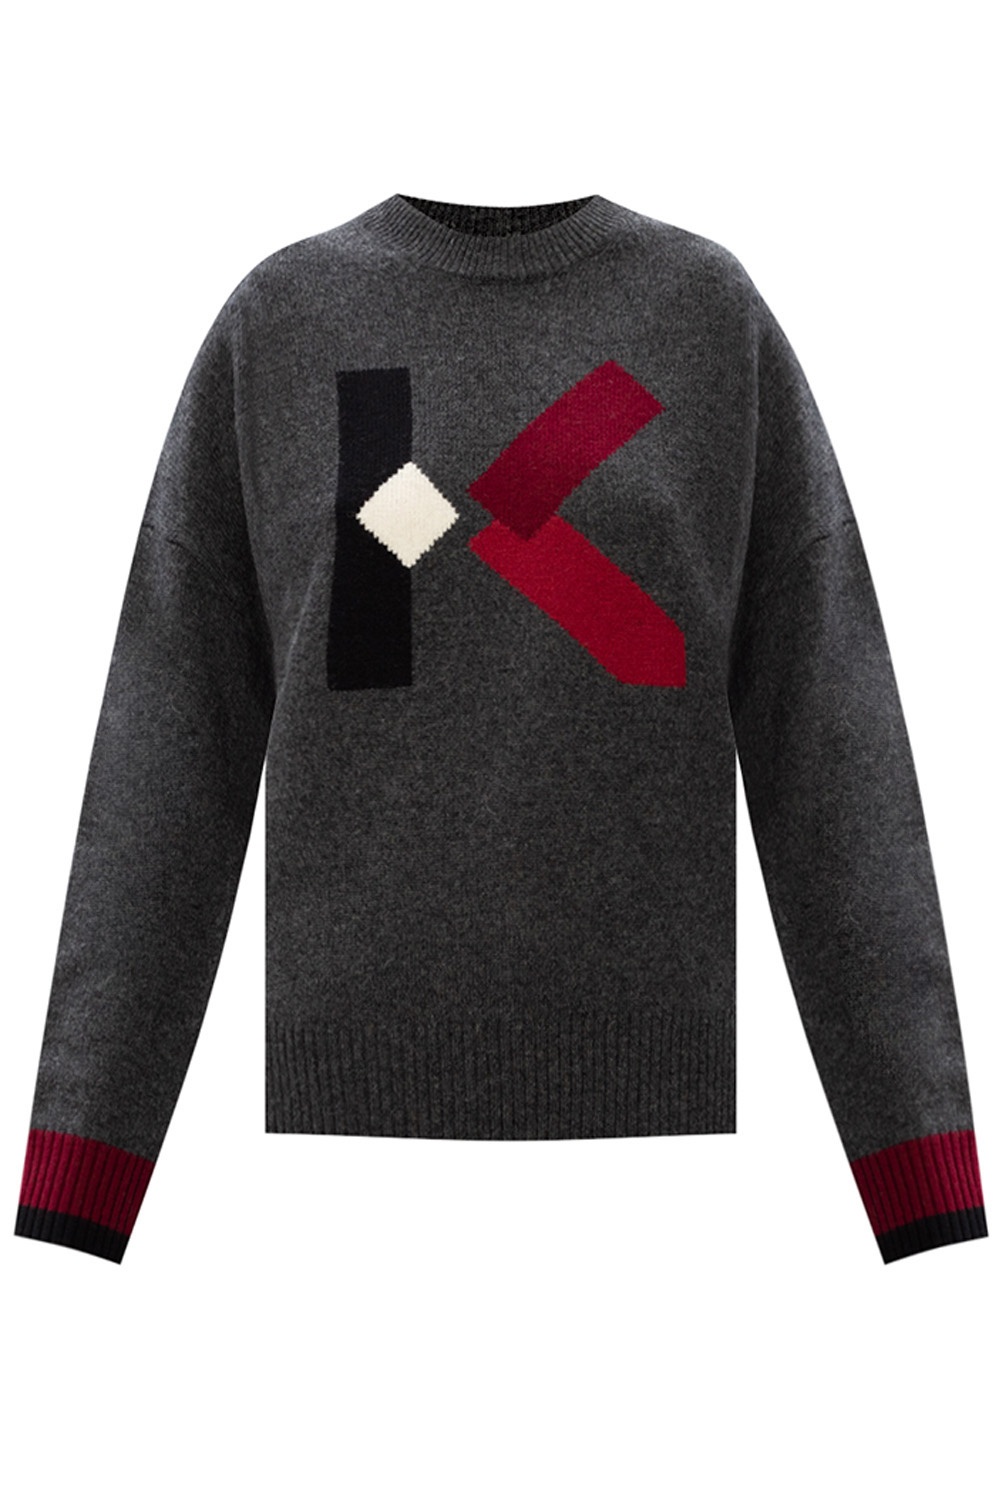 Wool sweater Kenzo - Vitkac TW